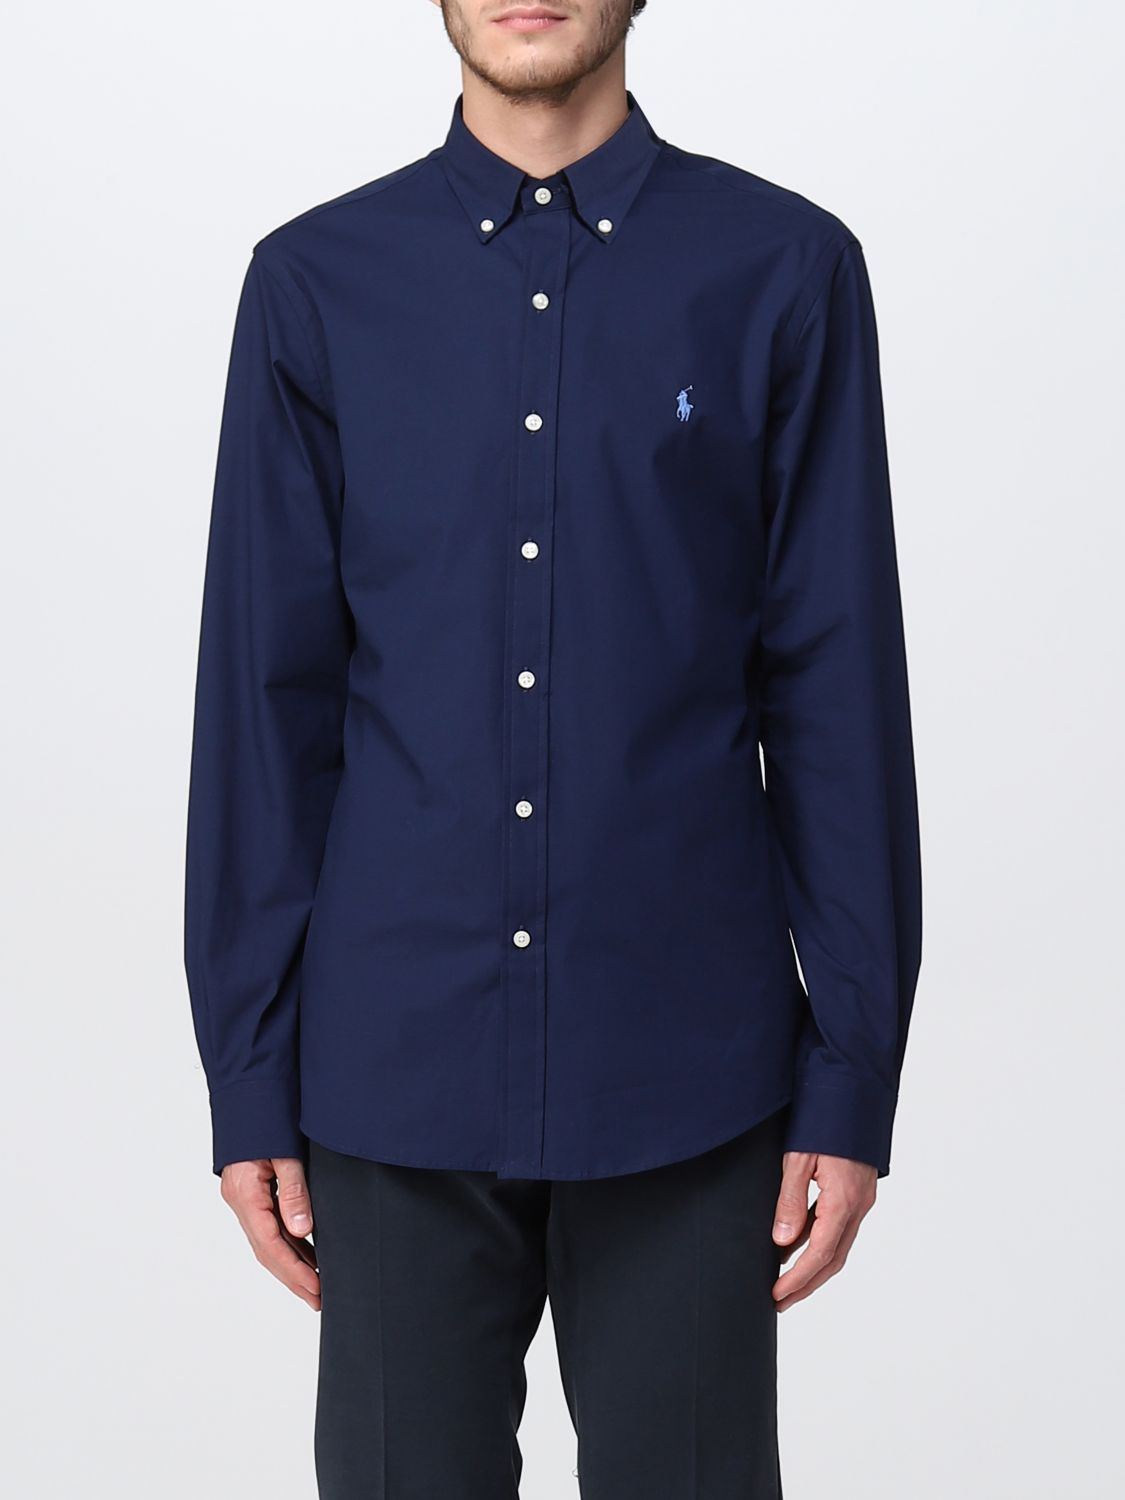 Kapper Wantrouwen Maaltijd Polo Ralph Lauren Outlet: shirt for man - Blue | Polo Ralph Lauren shirt  710832480 online on GIGLIO.COM